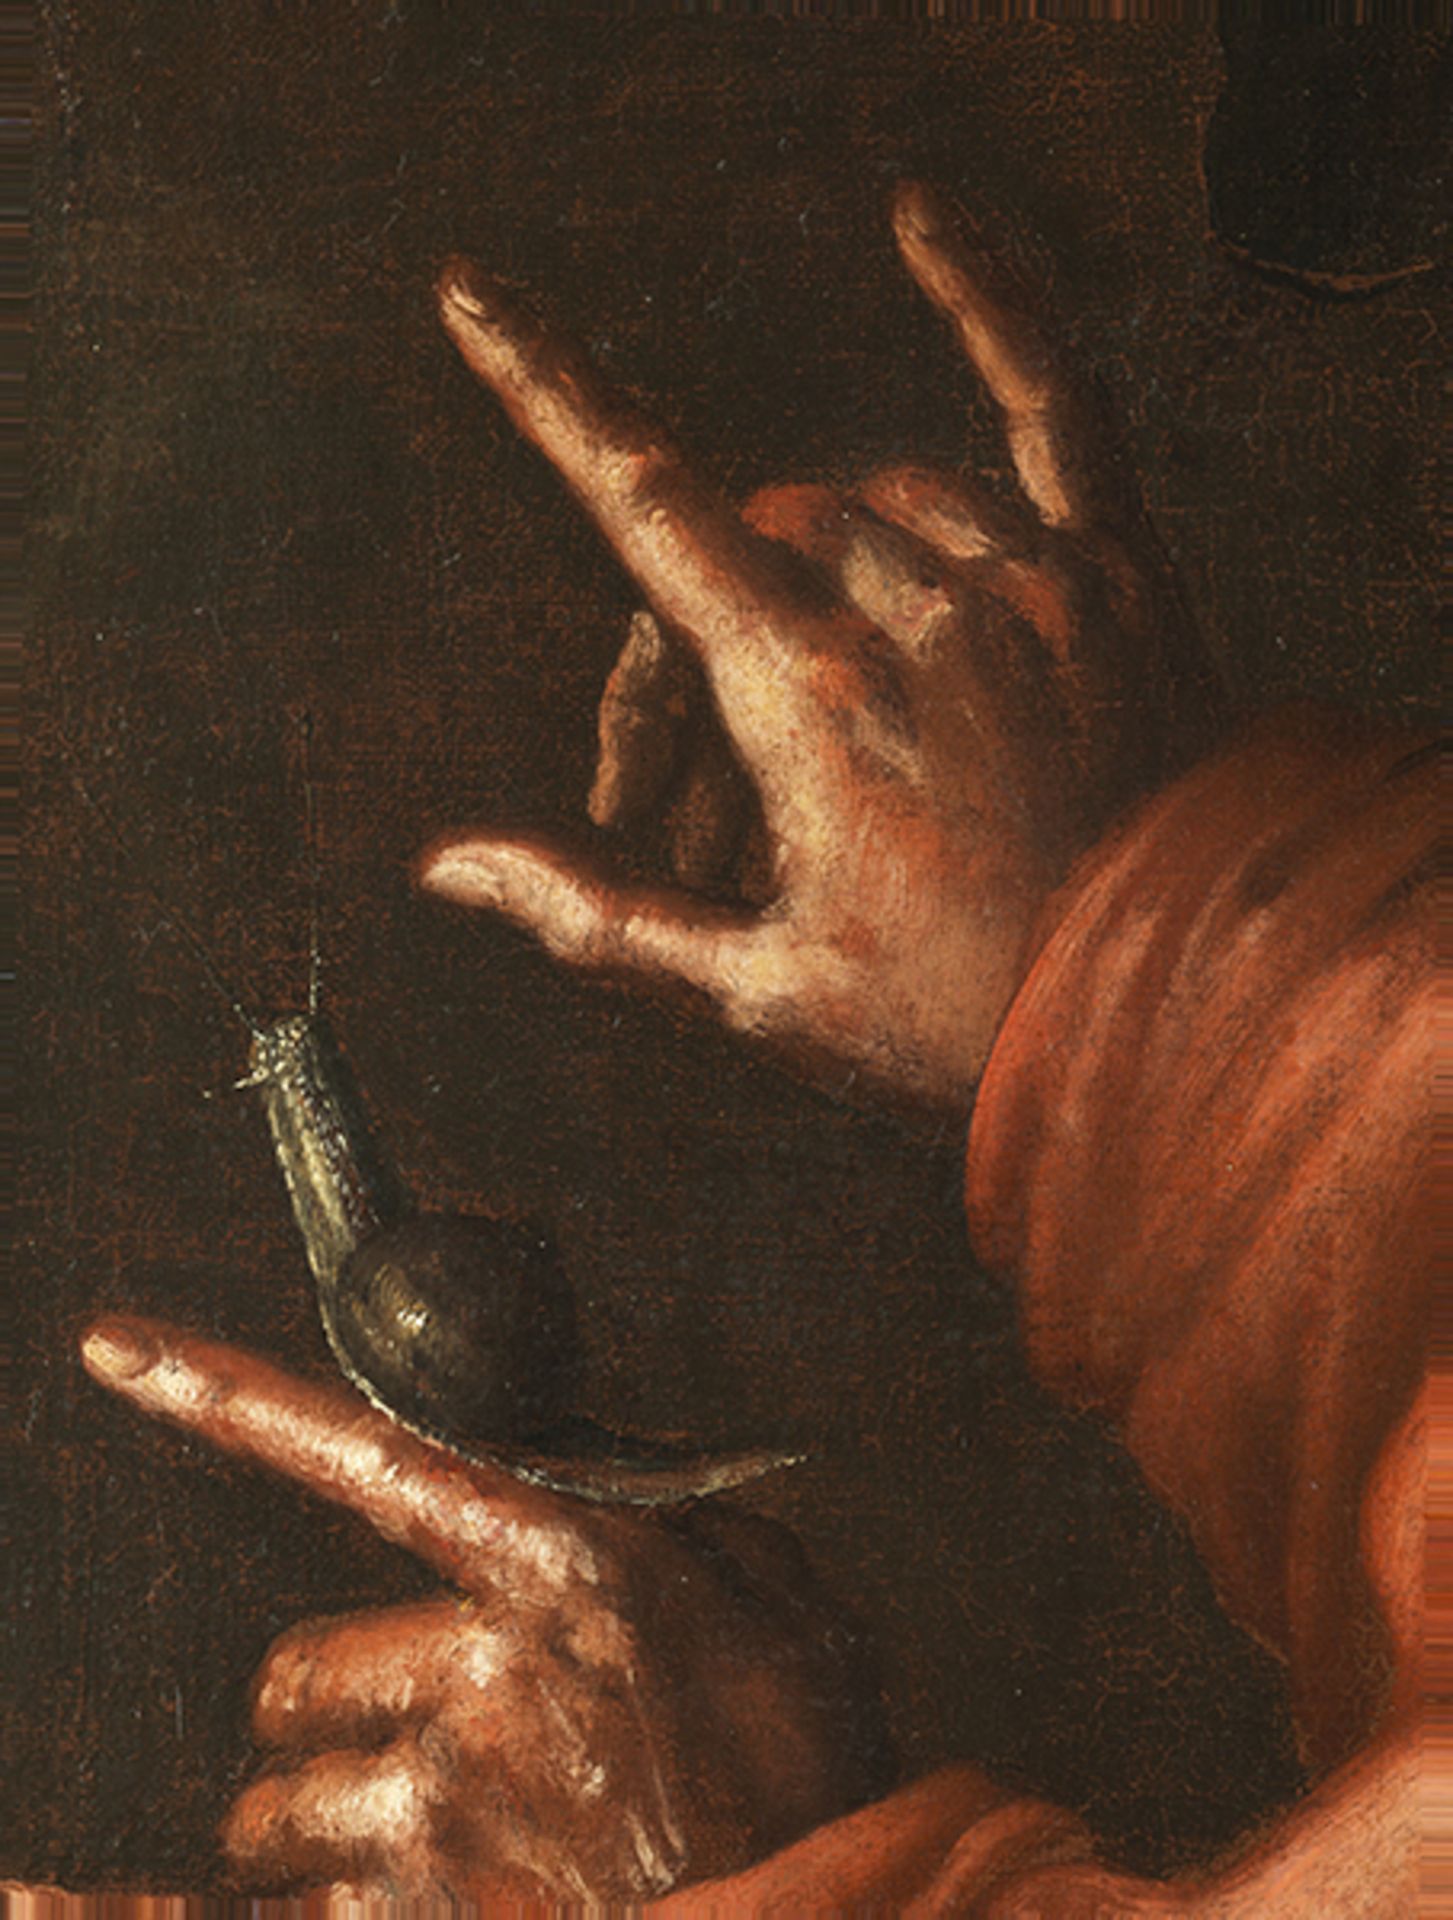 Maler des 17. Jahrhunderts LA BUONA VENTURA (DAS GLÜCK) Öl auf Leinwand. Doubliert. 95 x 75 cm. - Bild 3 aus 6